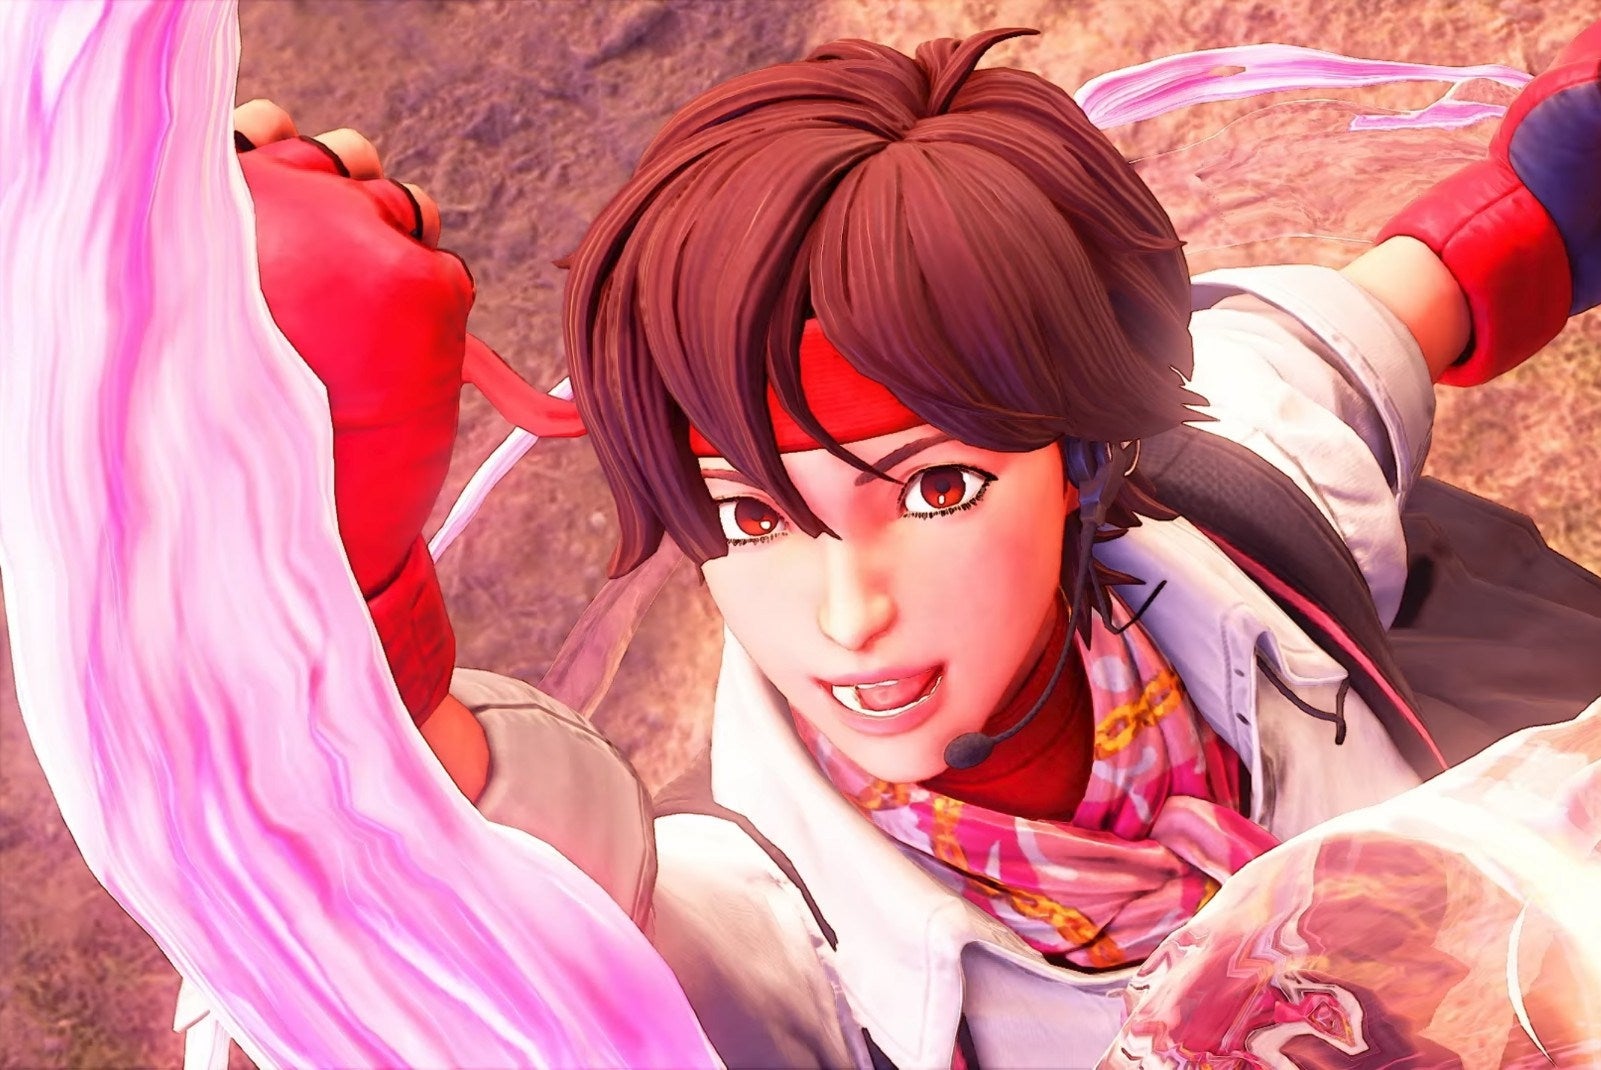 Immagine di Dimenticate Ryu, Ken o Akuma. Il personaggio più popolare di Street Fighter è Sakura